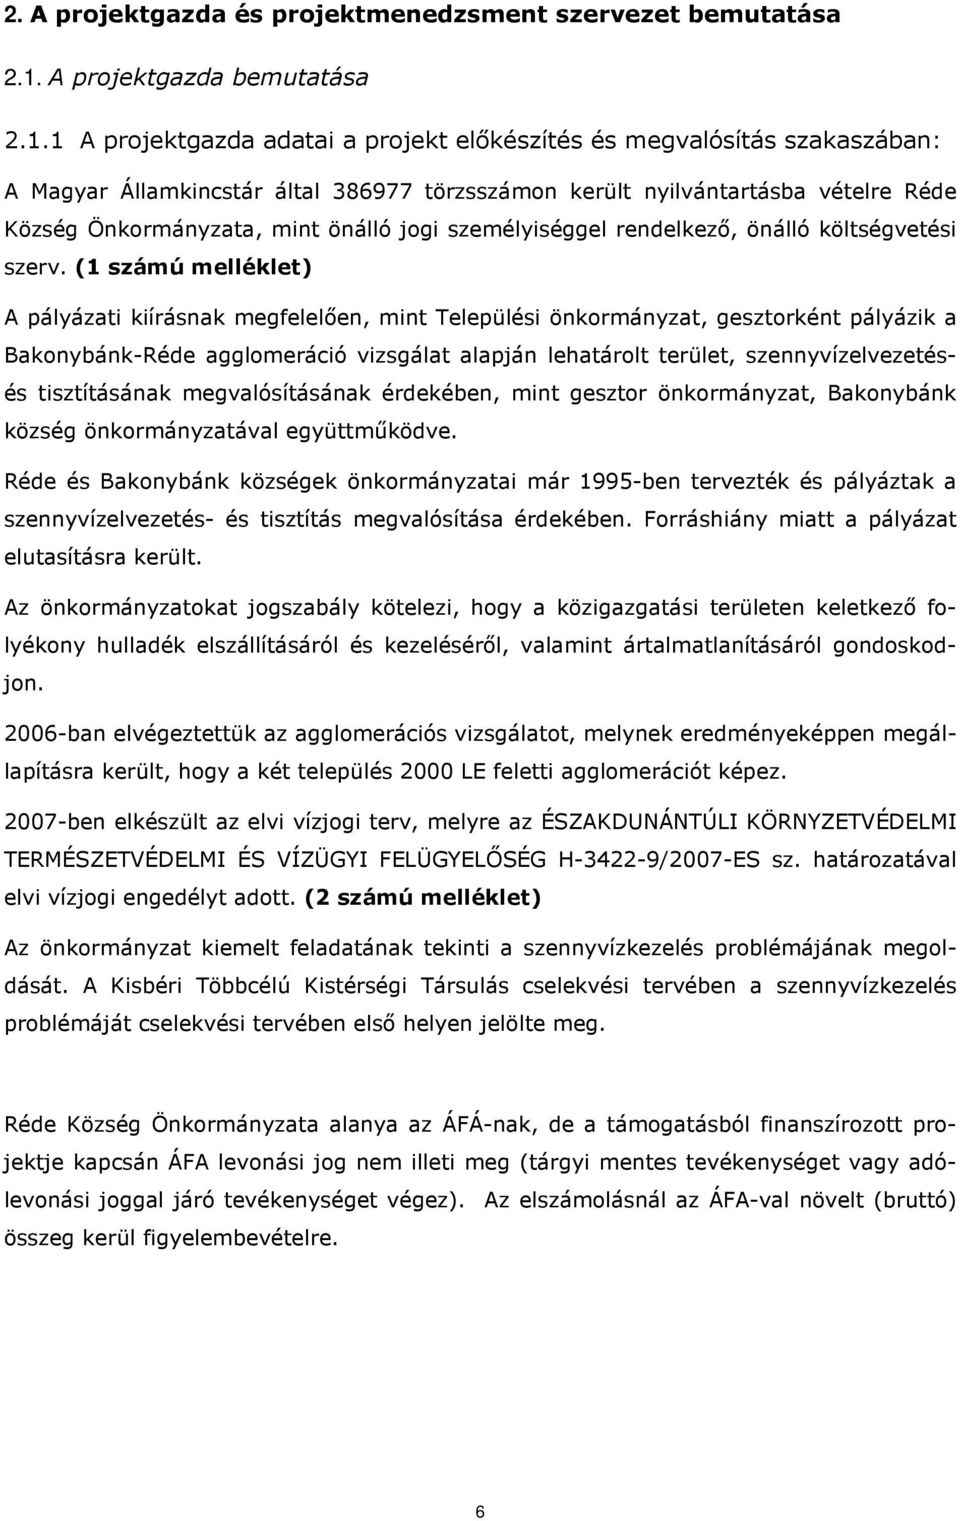 1 A projektgazda adatai a projekt előkészítés és megvalósítás szakaszában: A Magyar Államkincstár által 386977 törzsszámon került nyilvántartásba vételre Réde Község Önkormányzata, mint önálló jogi